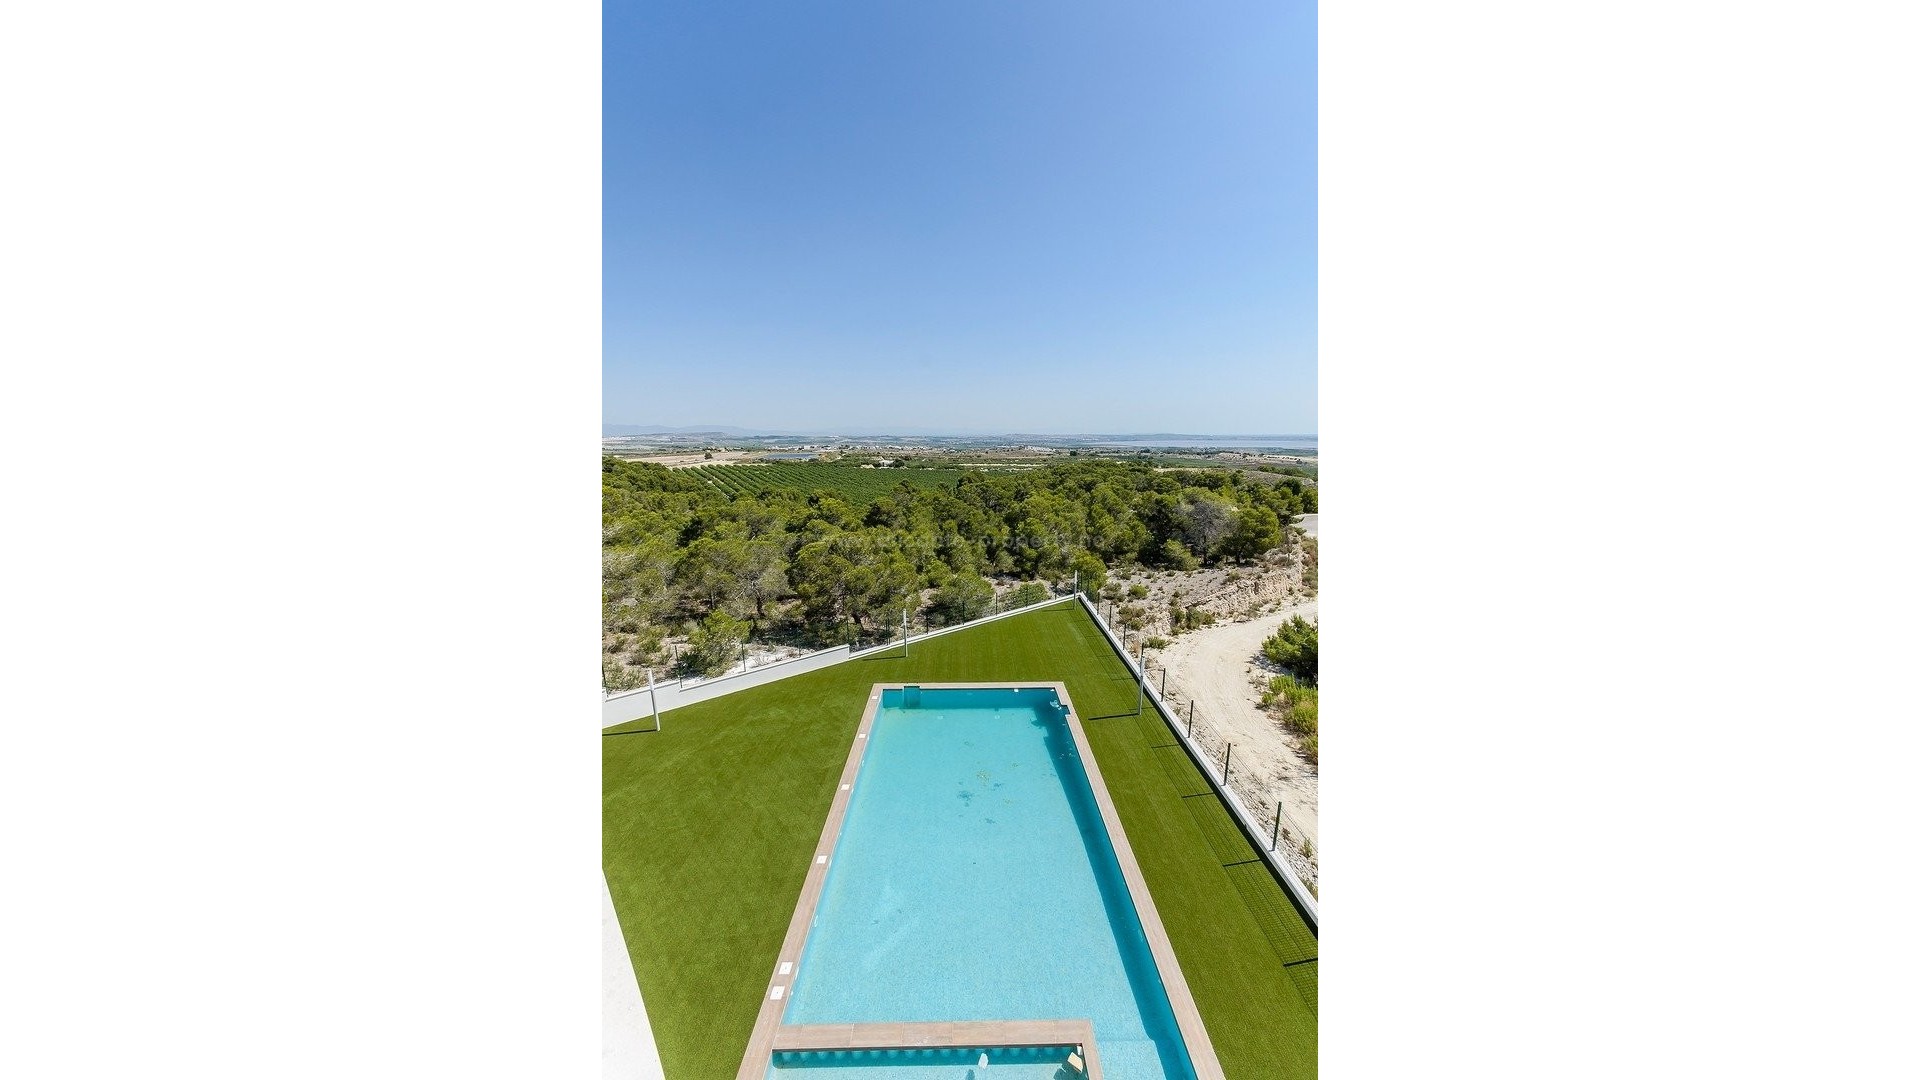 New build villa/bungalows in San Miguel de Salinas, 2/3 bedrooms, 2 bathrooms, private solarium or garden, communal area with pool and garden